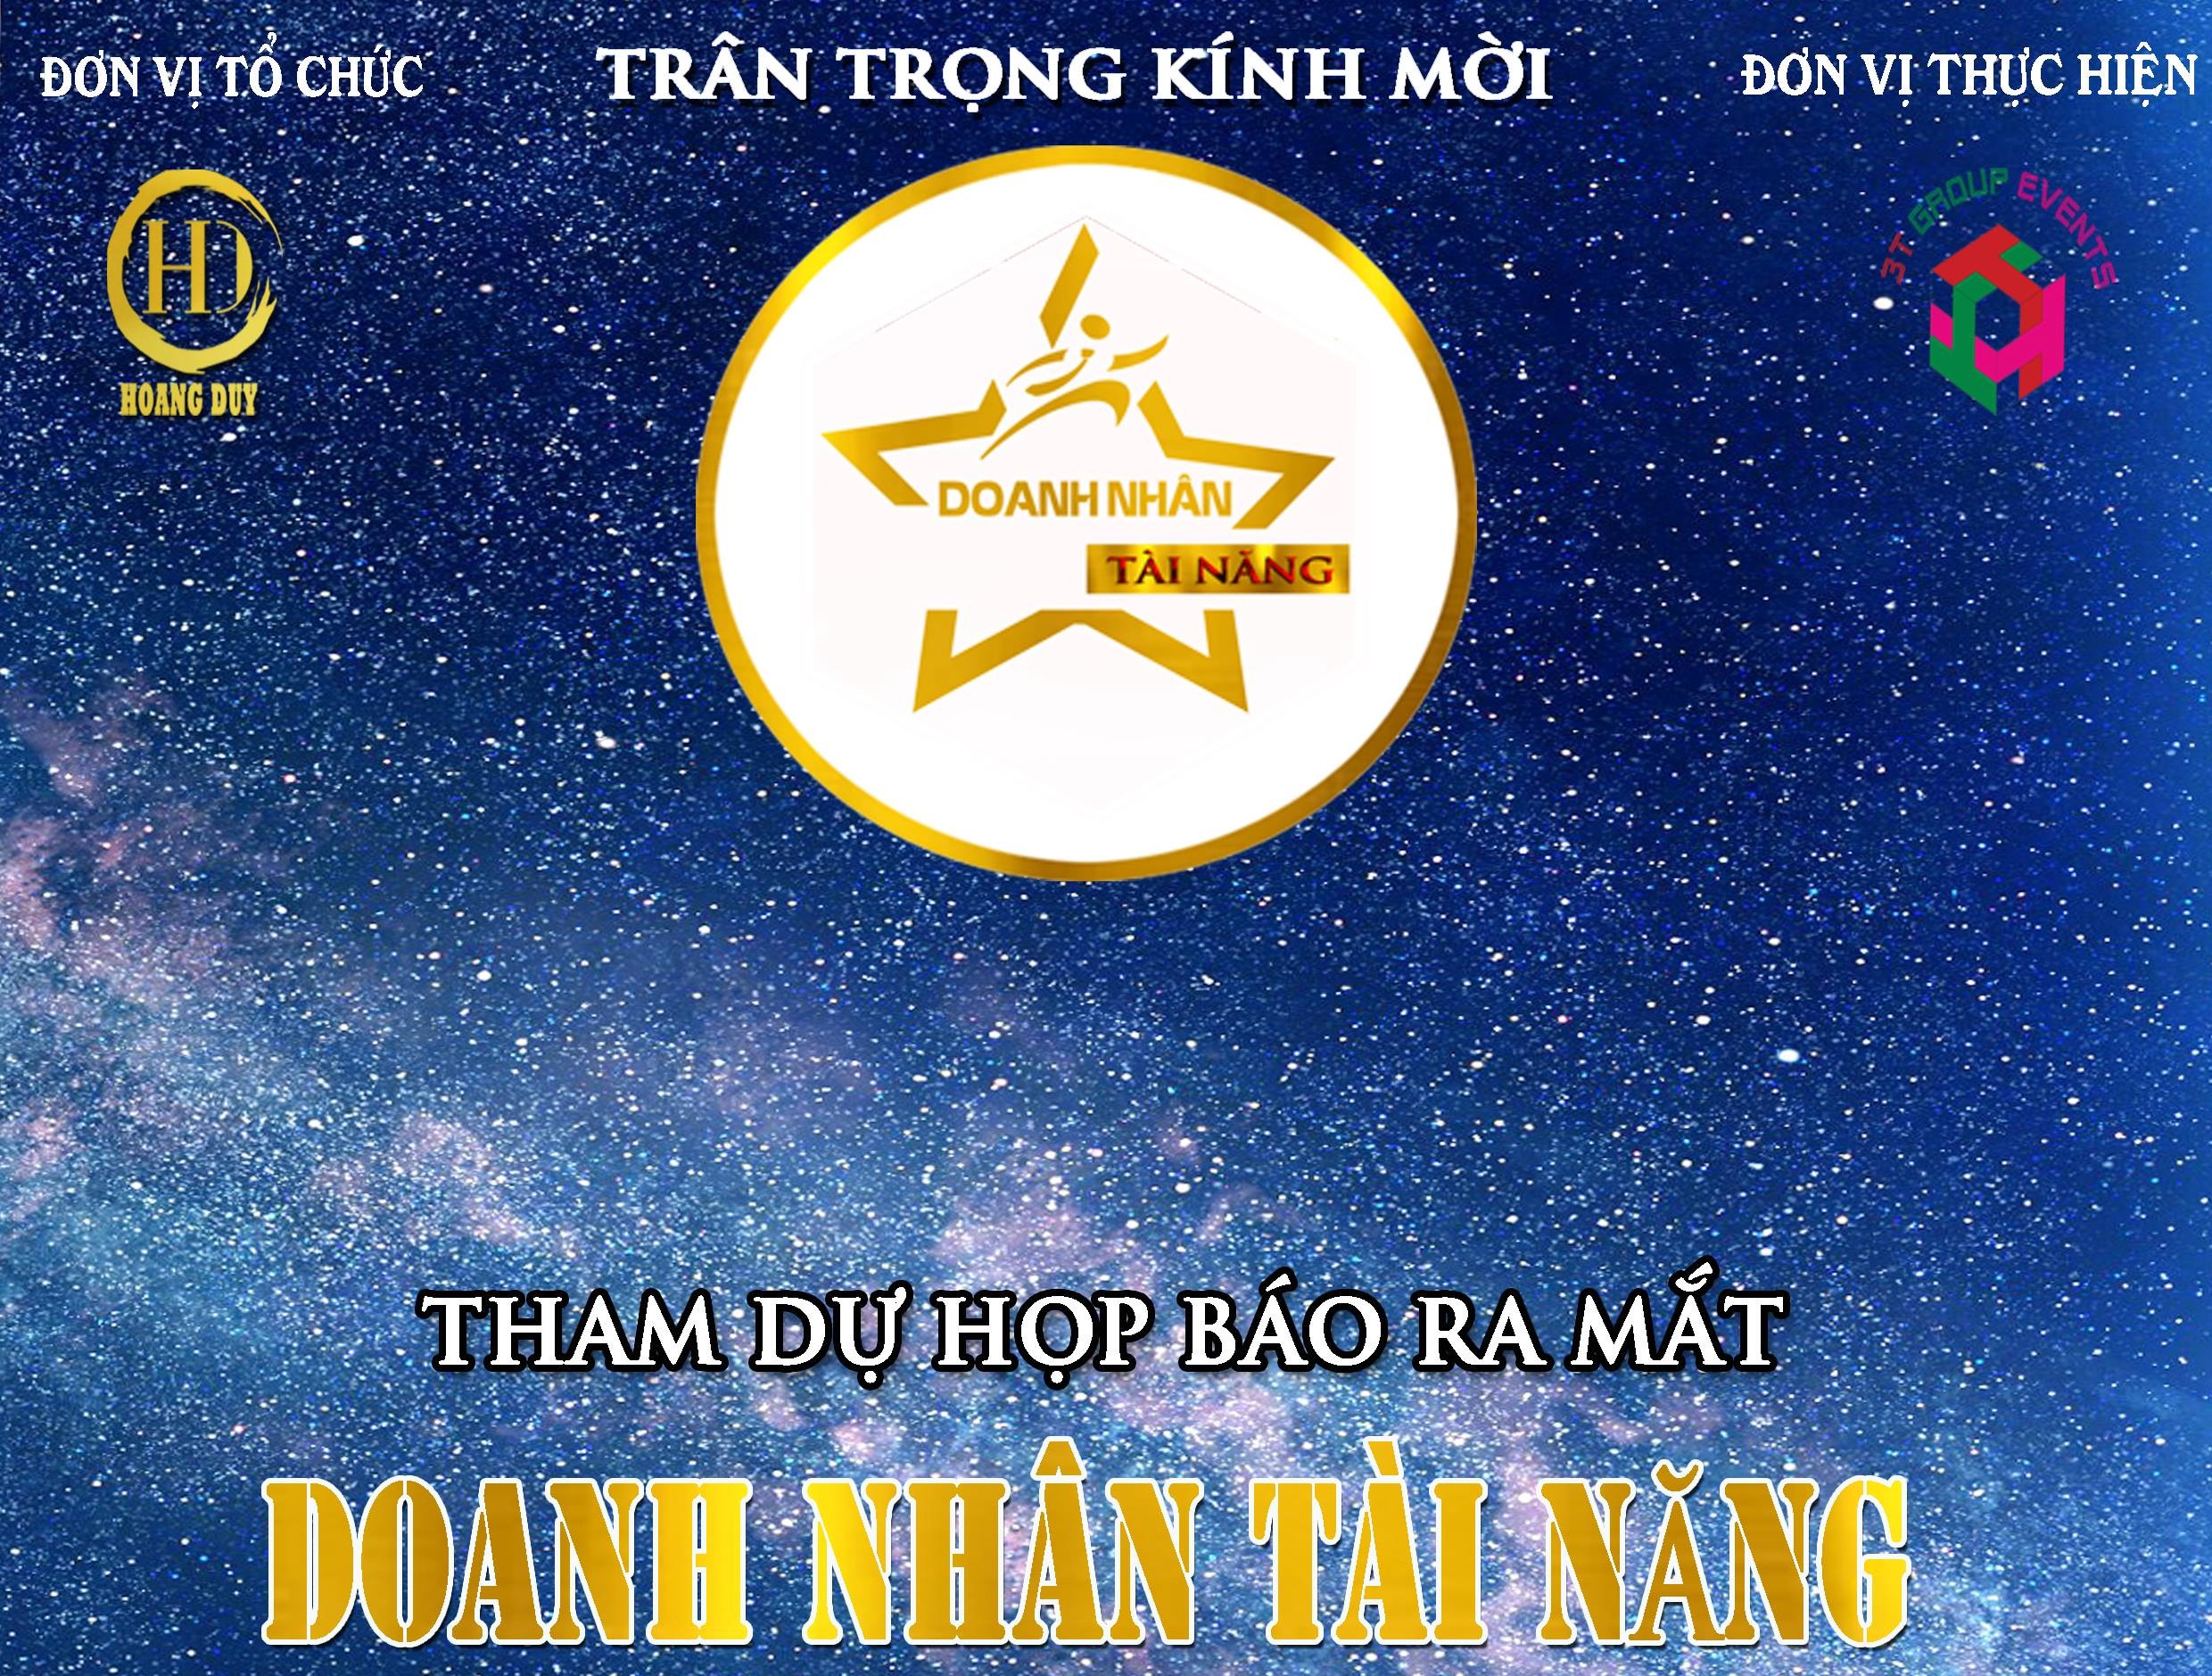 “Doanh nhân tài năng”: Sân chơi mới lạ cho doanh nhân Việt